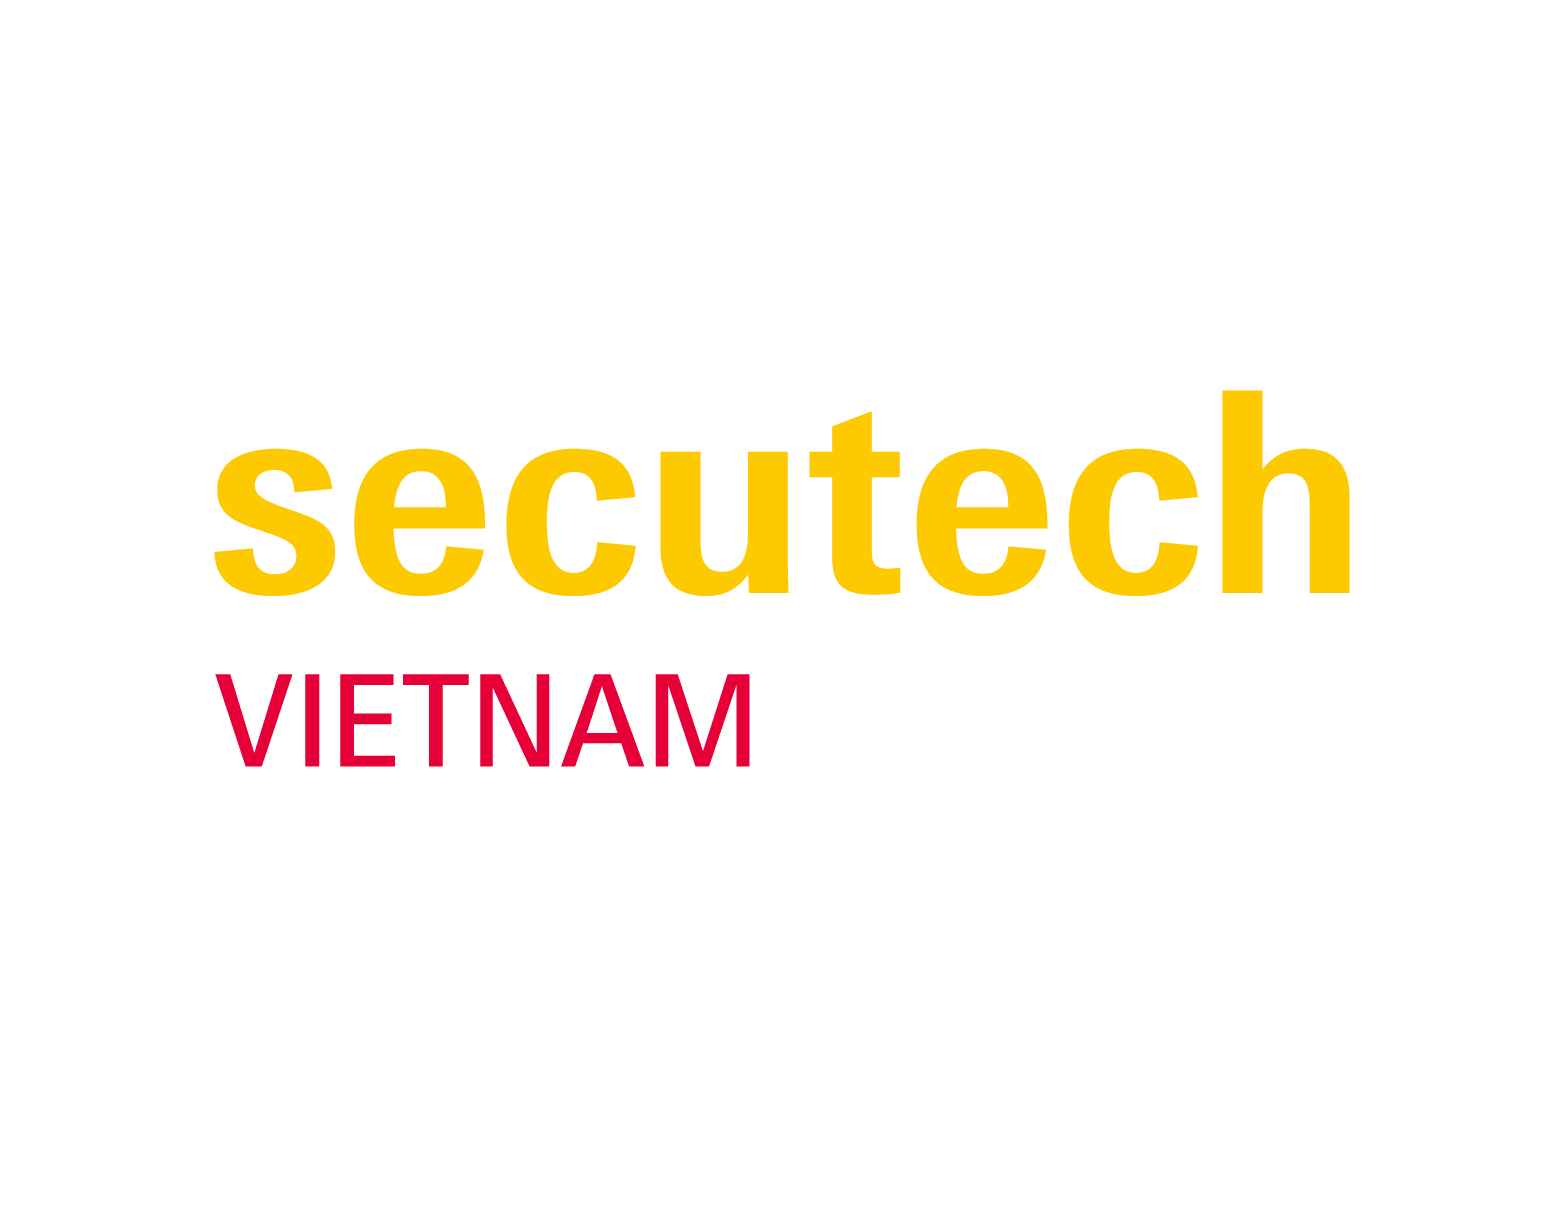 Secutech Vietnam